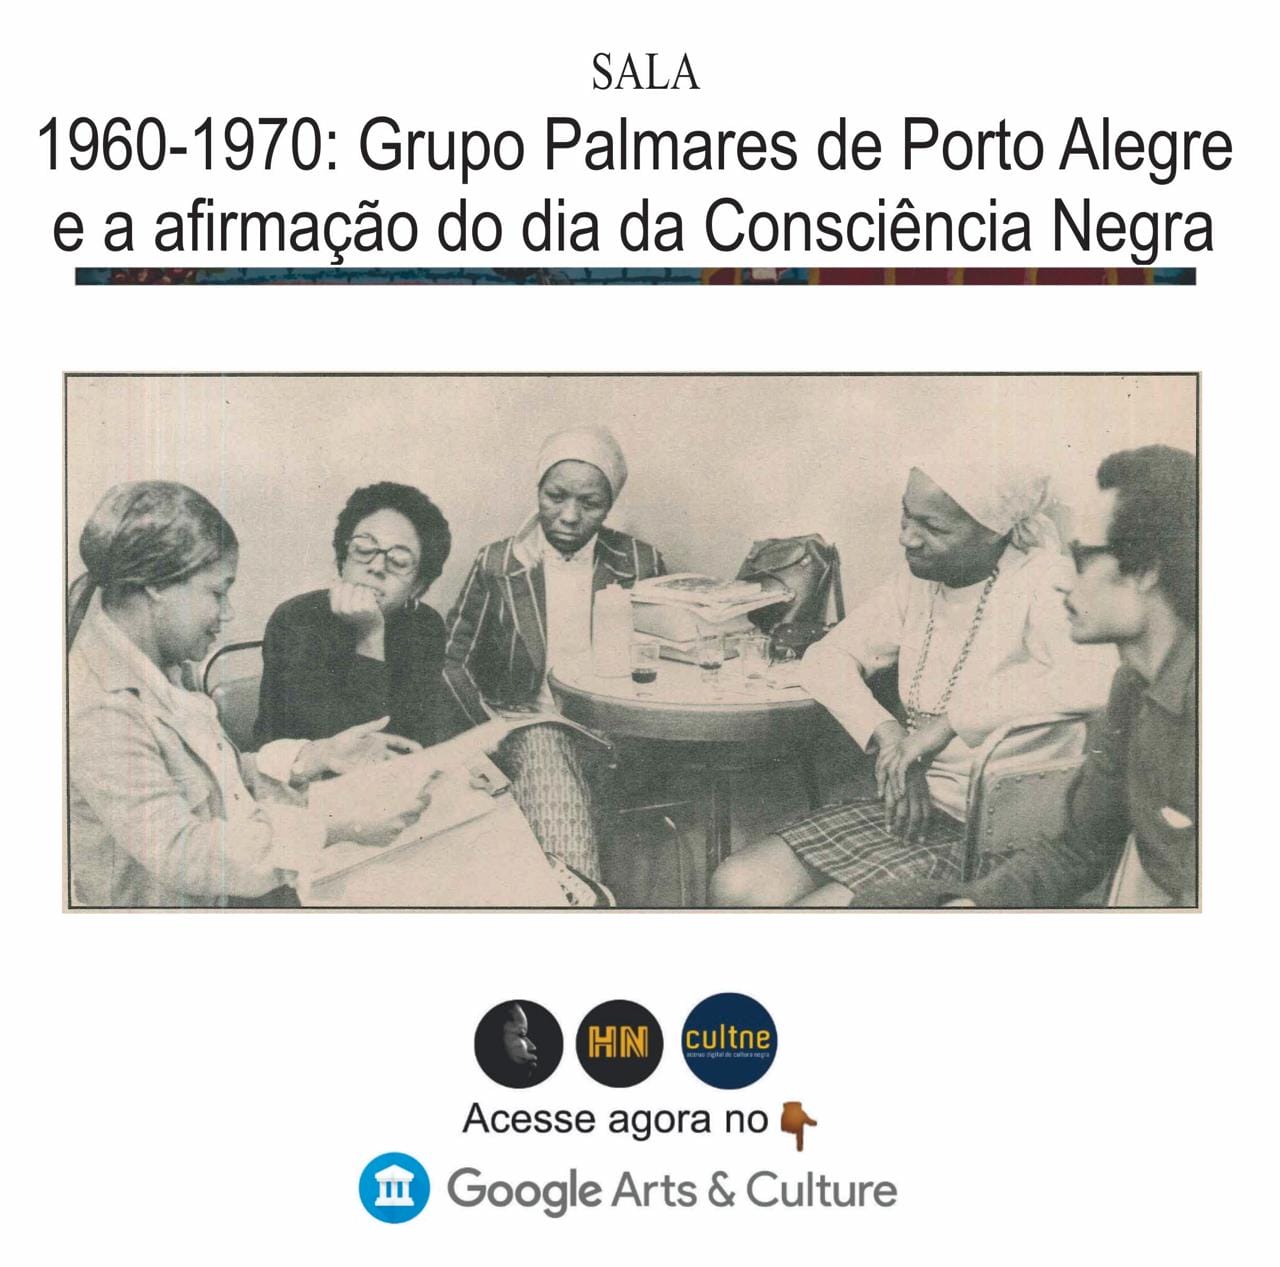 1960-1970: Grupo Palmares de Porto Alegre e a afirmação do Dia da Consciência Negra